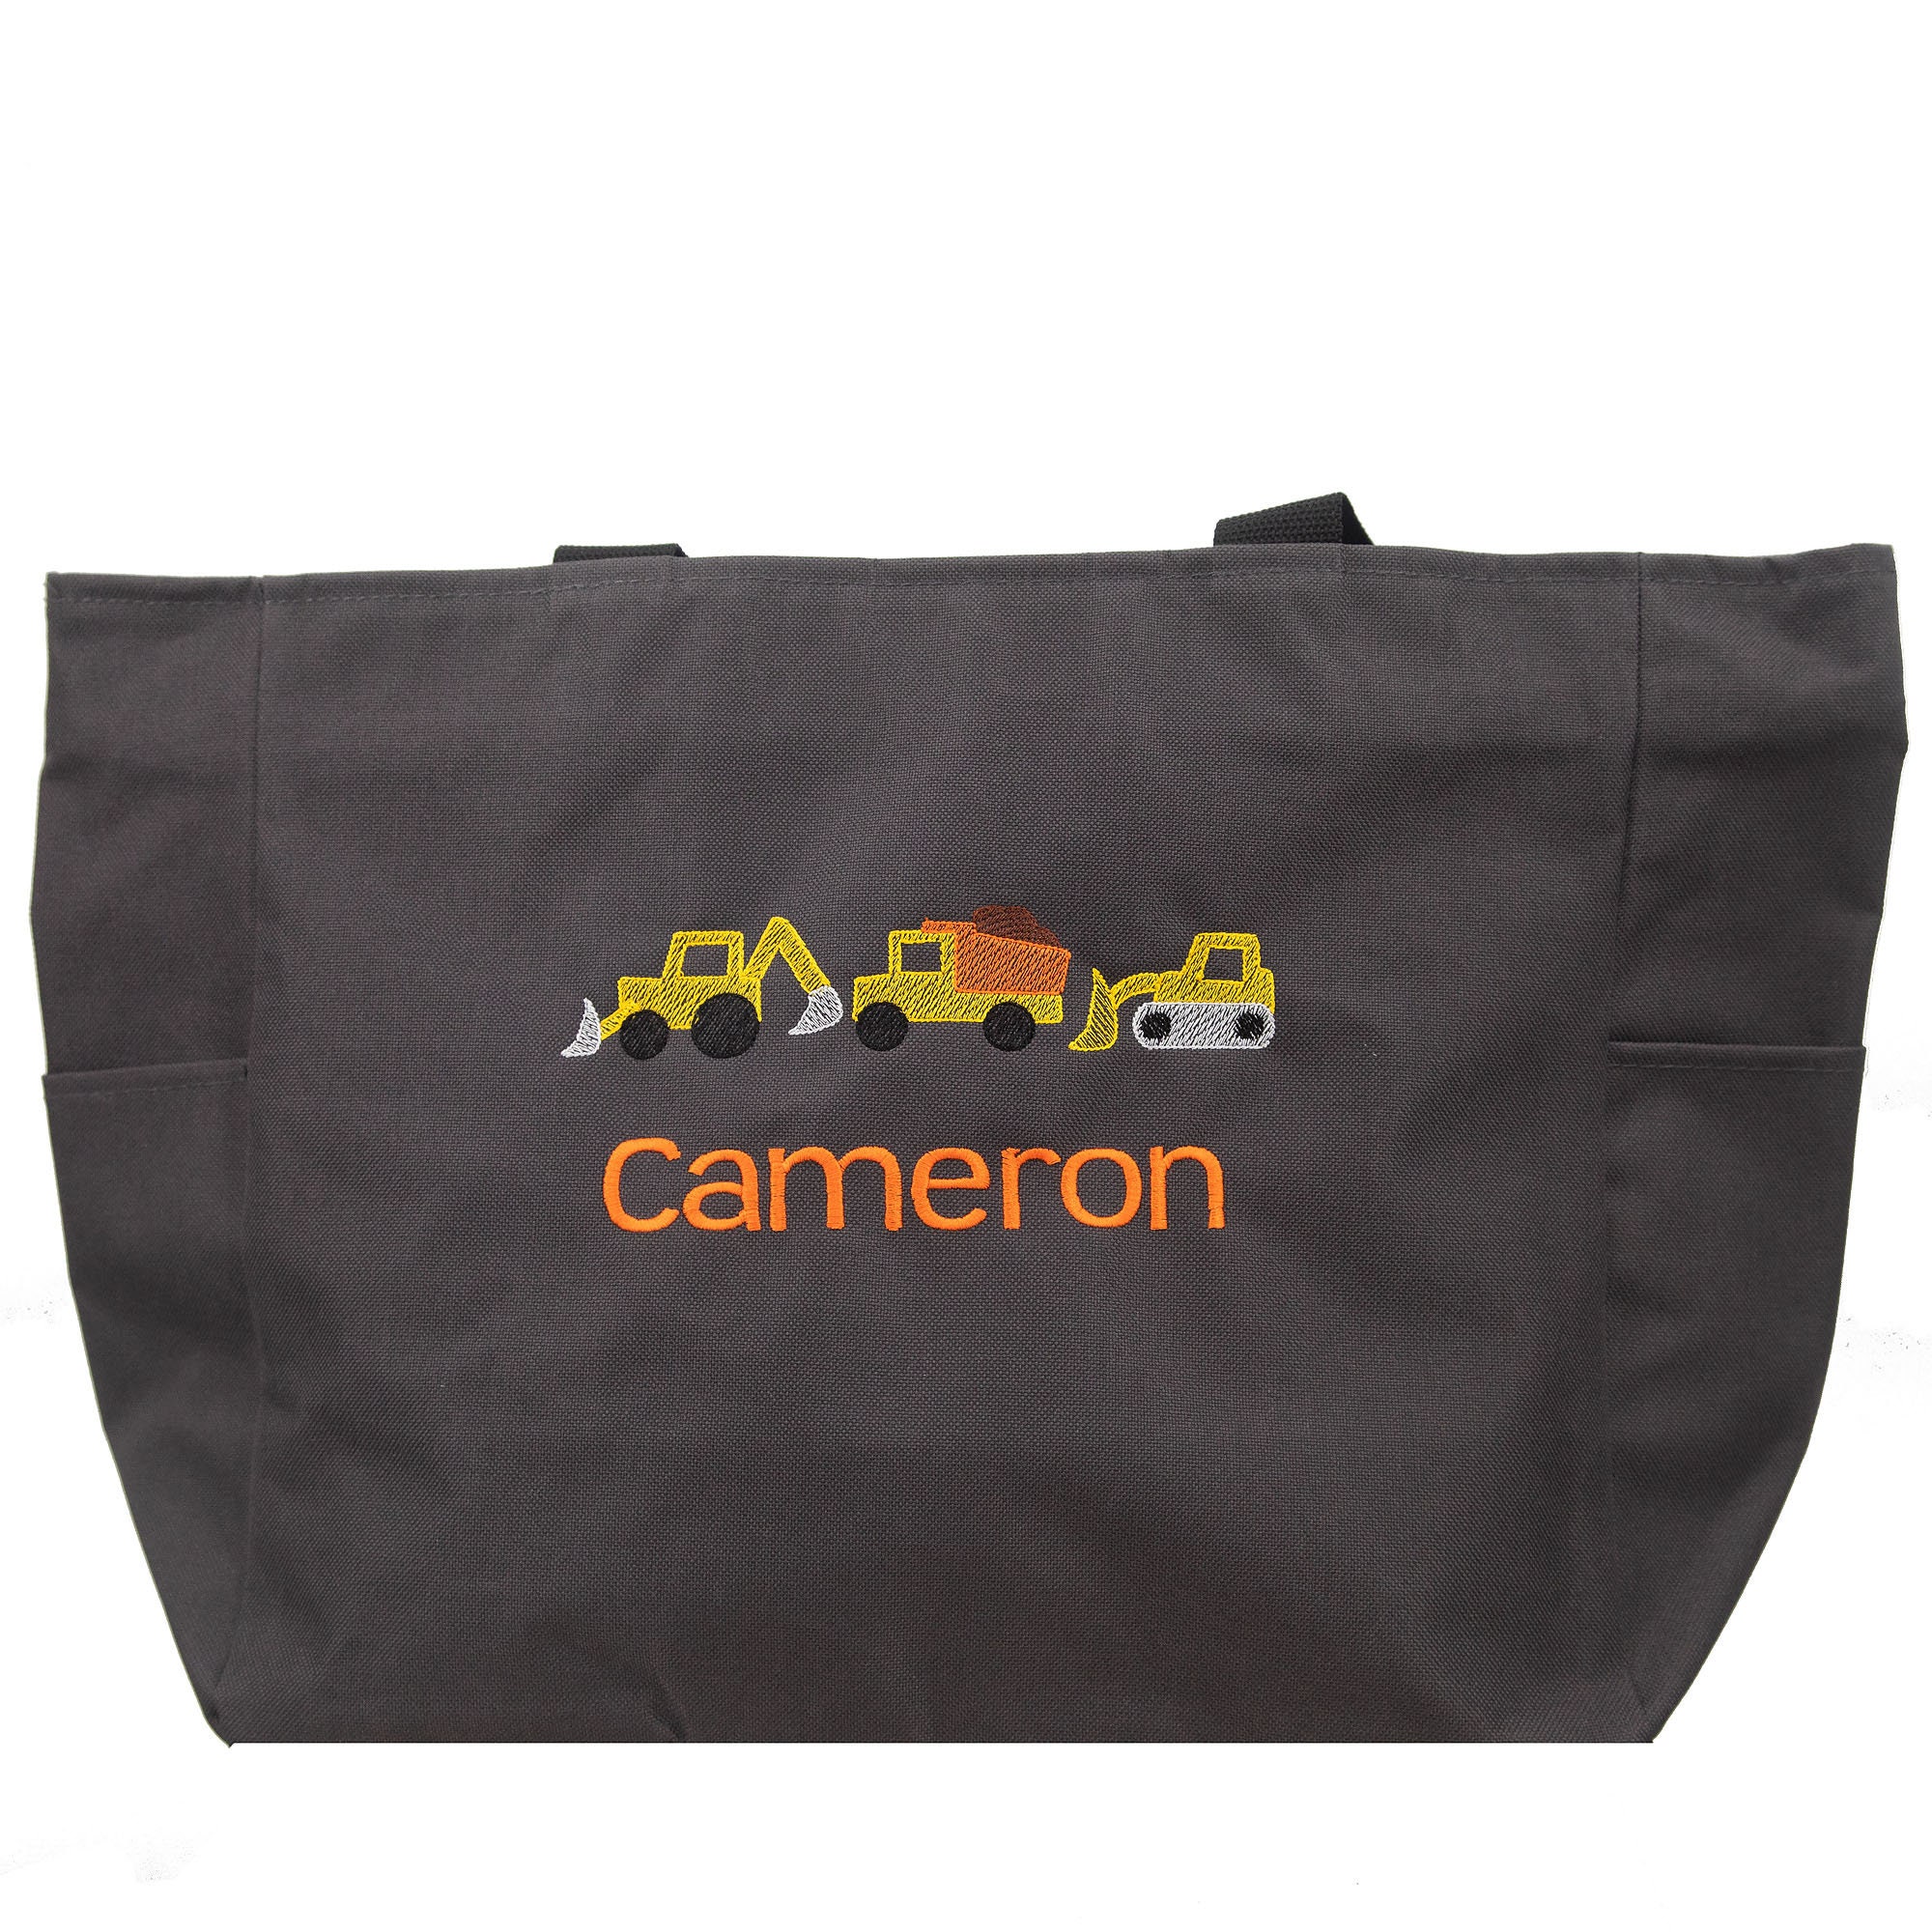 Président Monogram Canvas - Bags